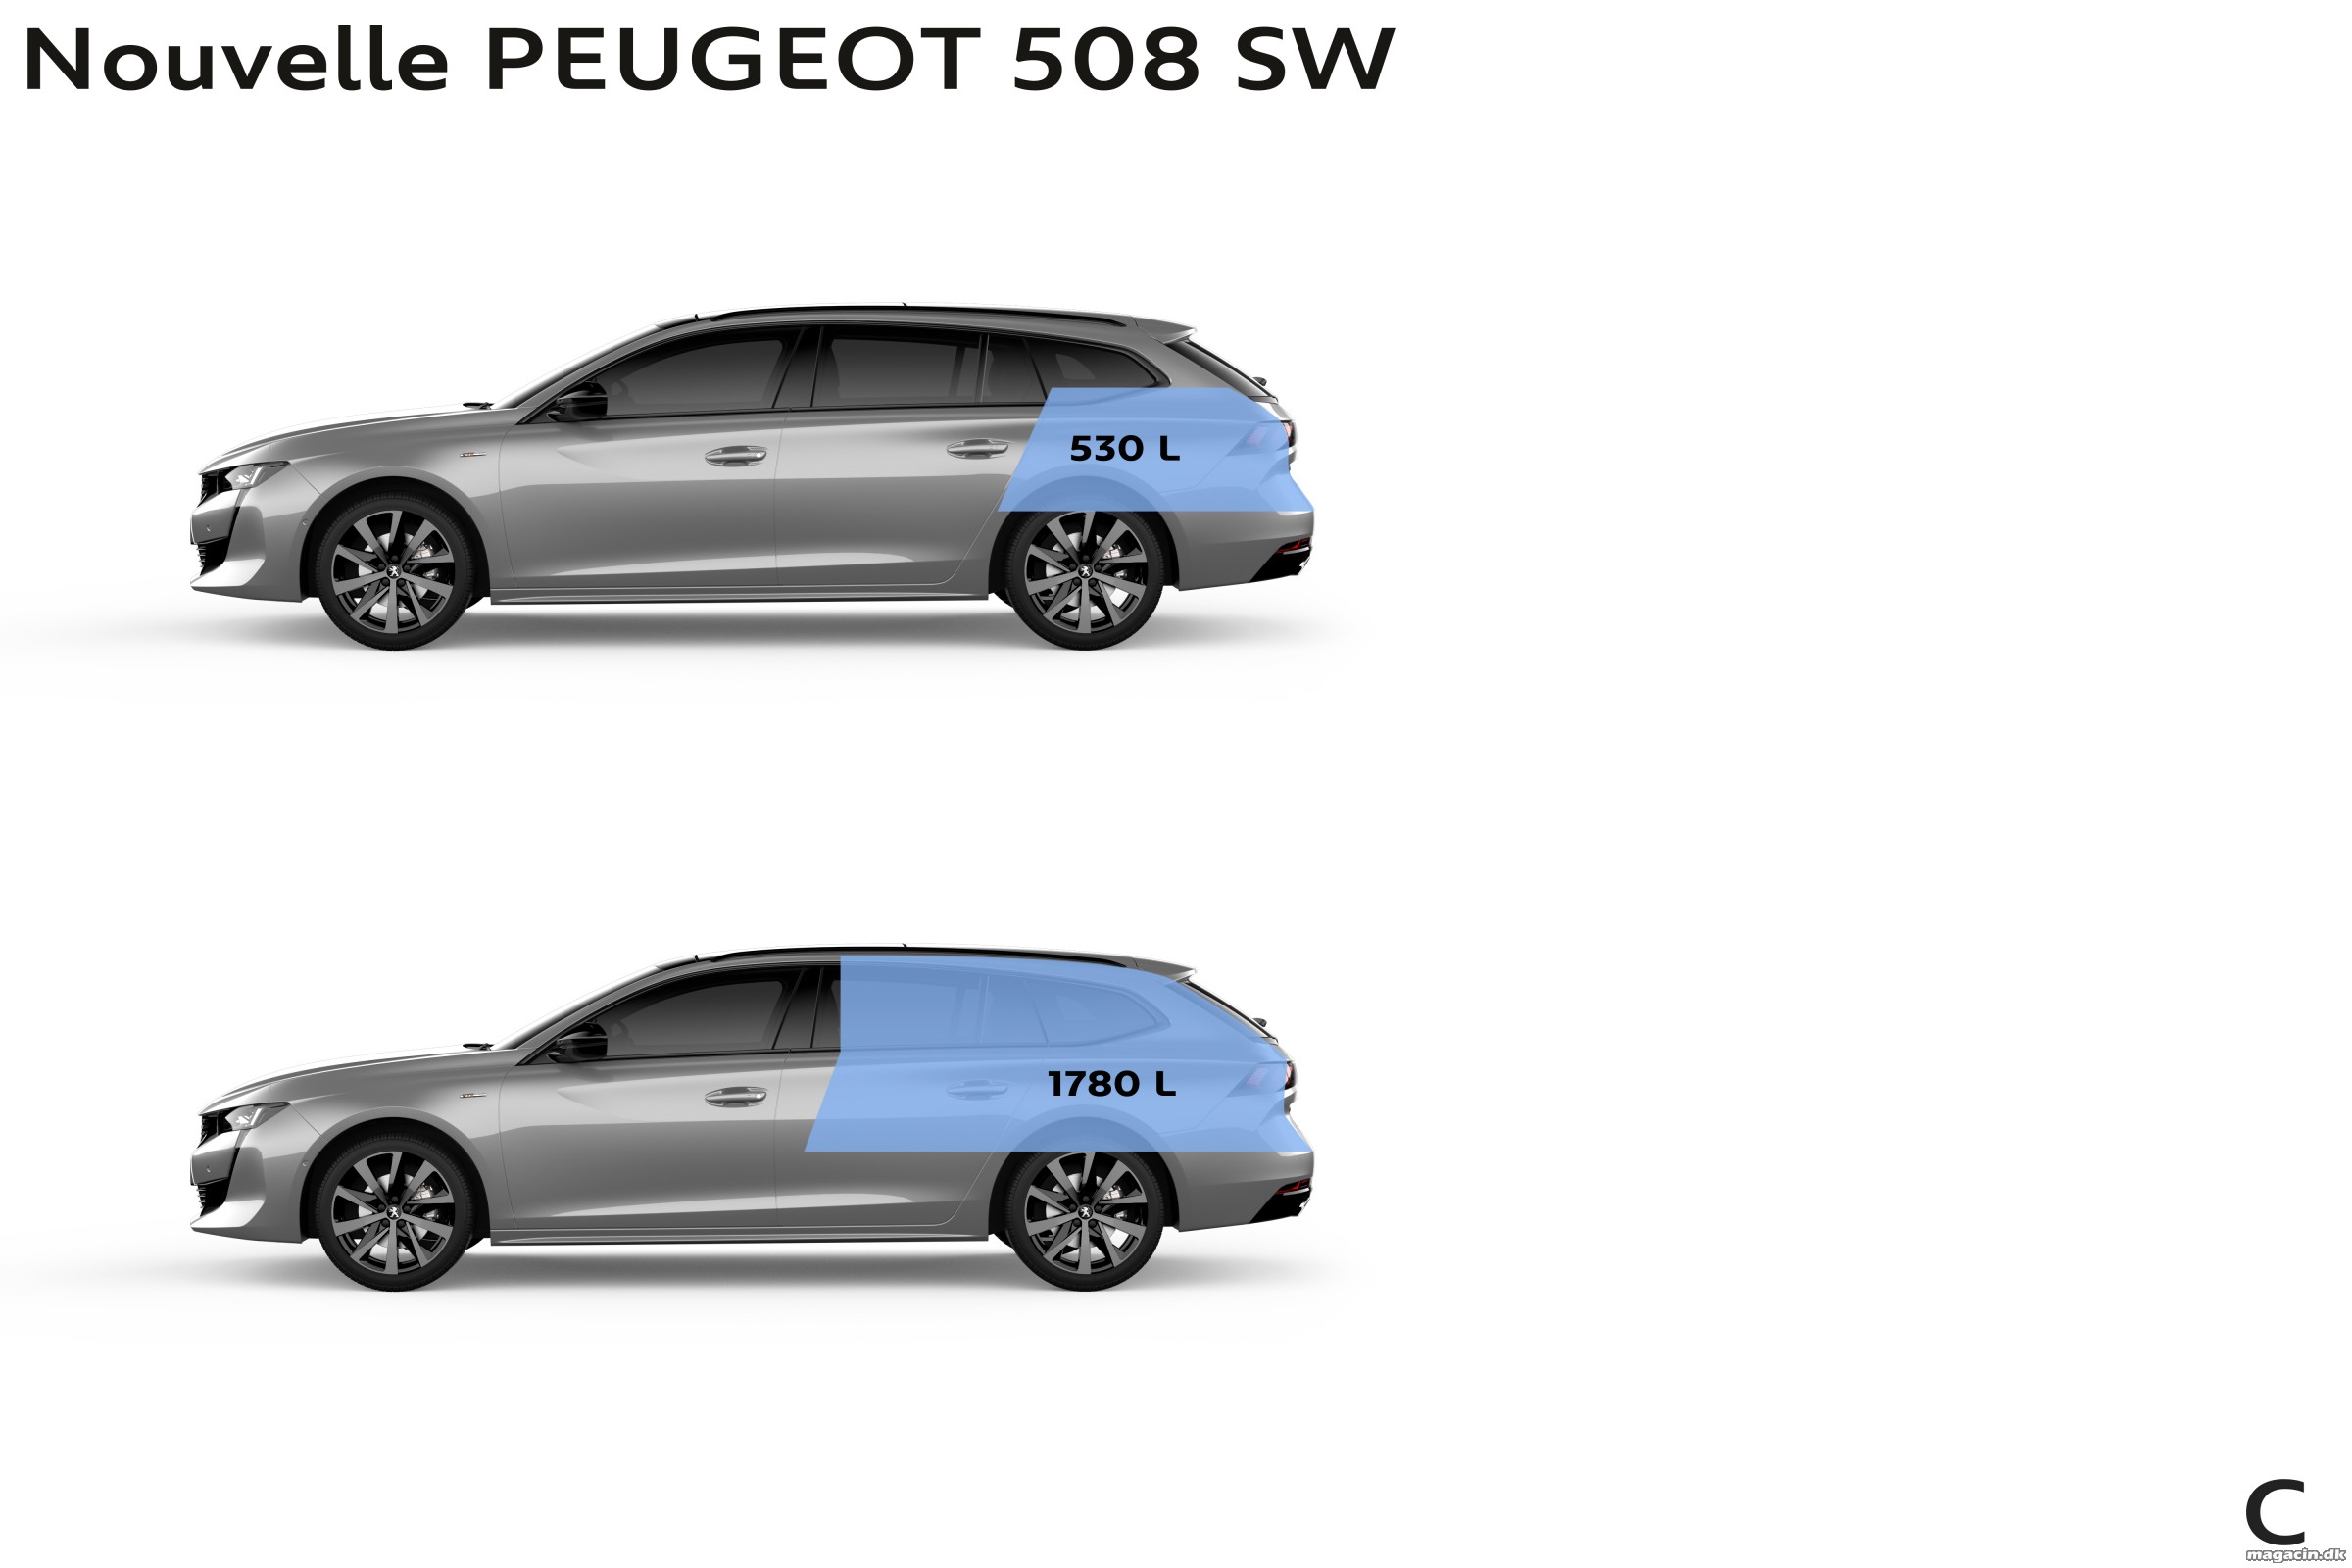 Peugeot hæver barren med ny 508 SW